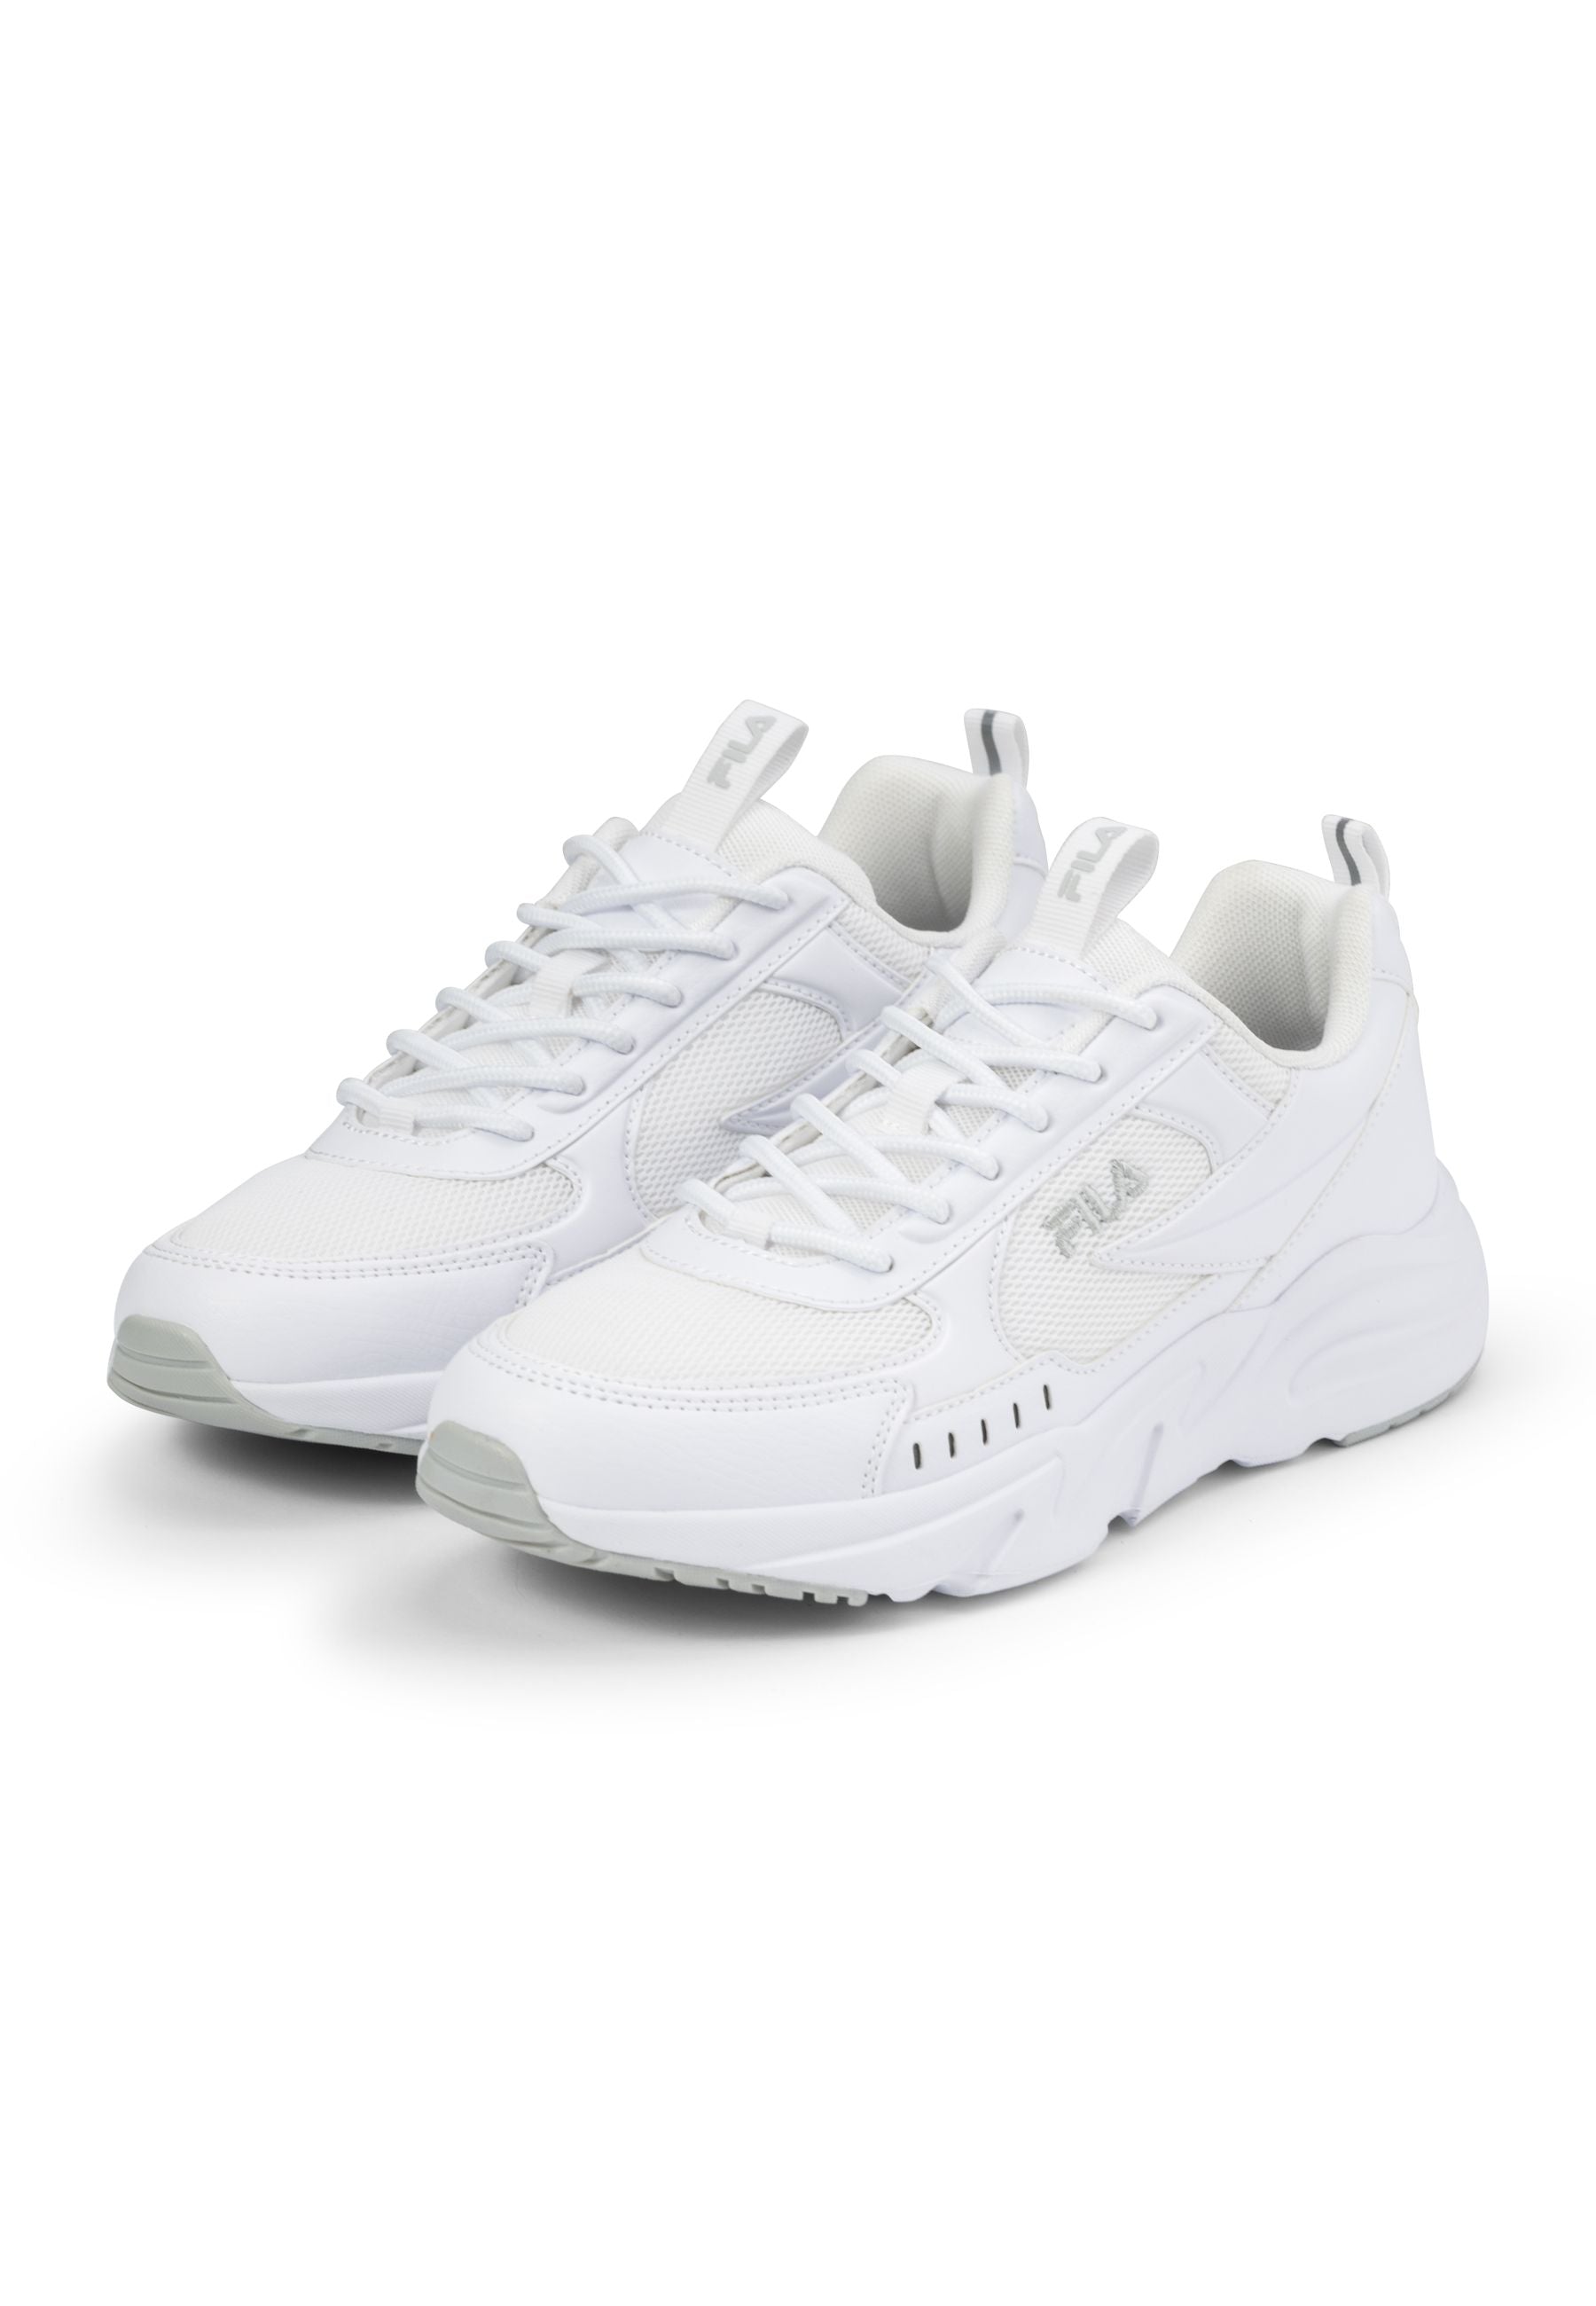 Fila Vittori Wmn in White Sneakers Fila   